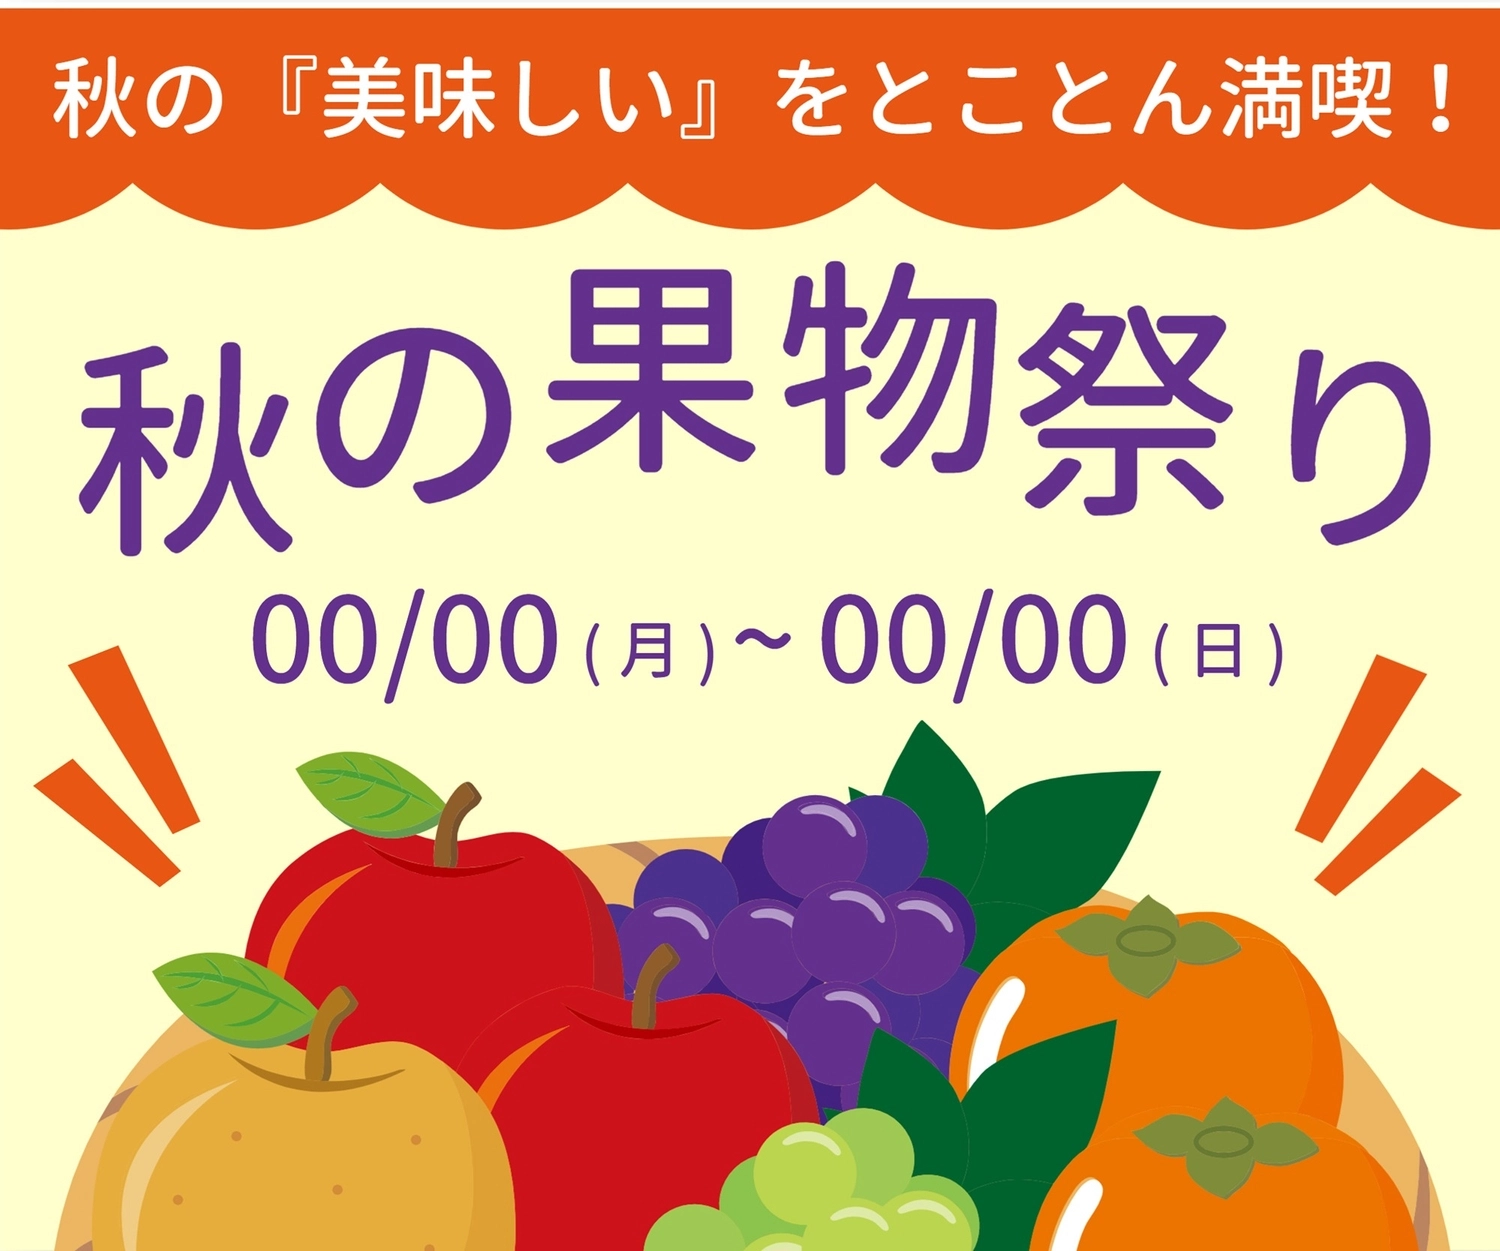 秋の果物祭り（果物イラスト）, スッキリ, リンゴ, ブドウ, バナーテンプレート